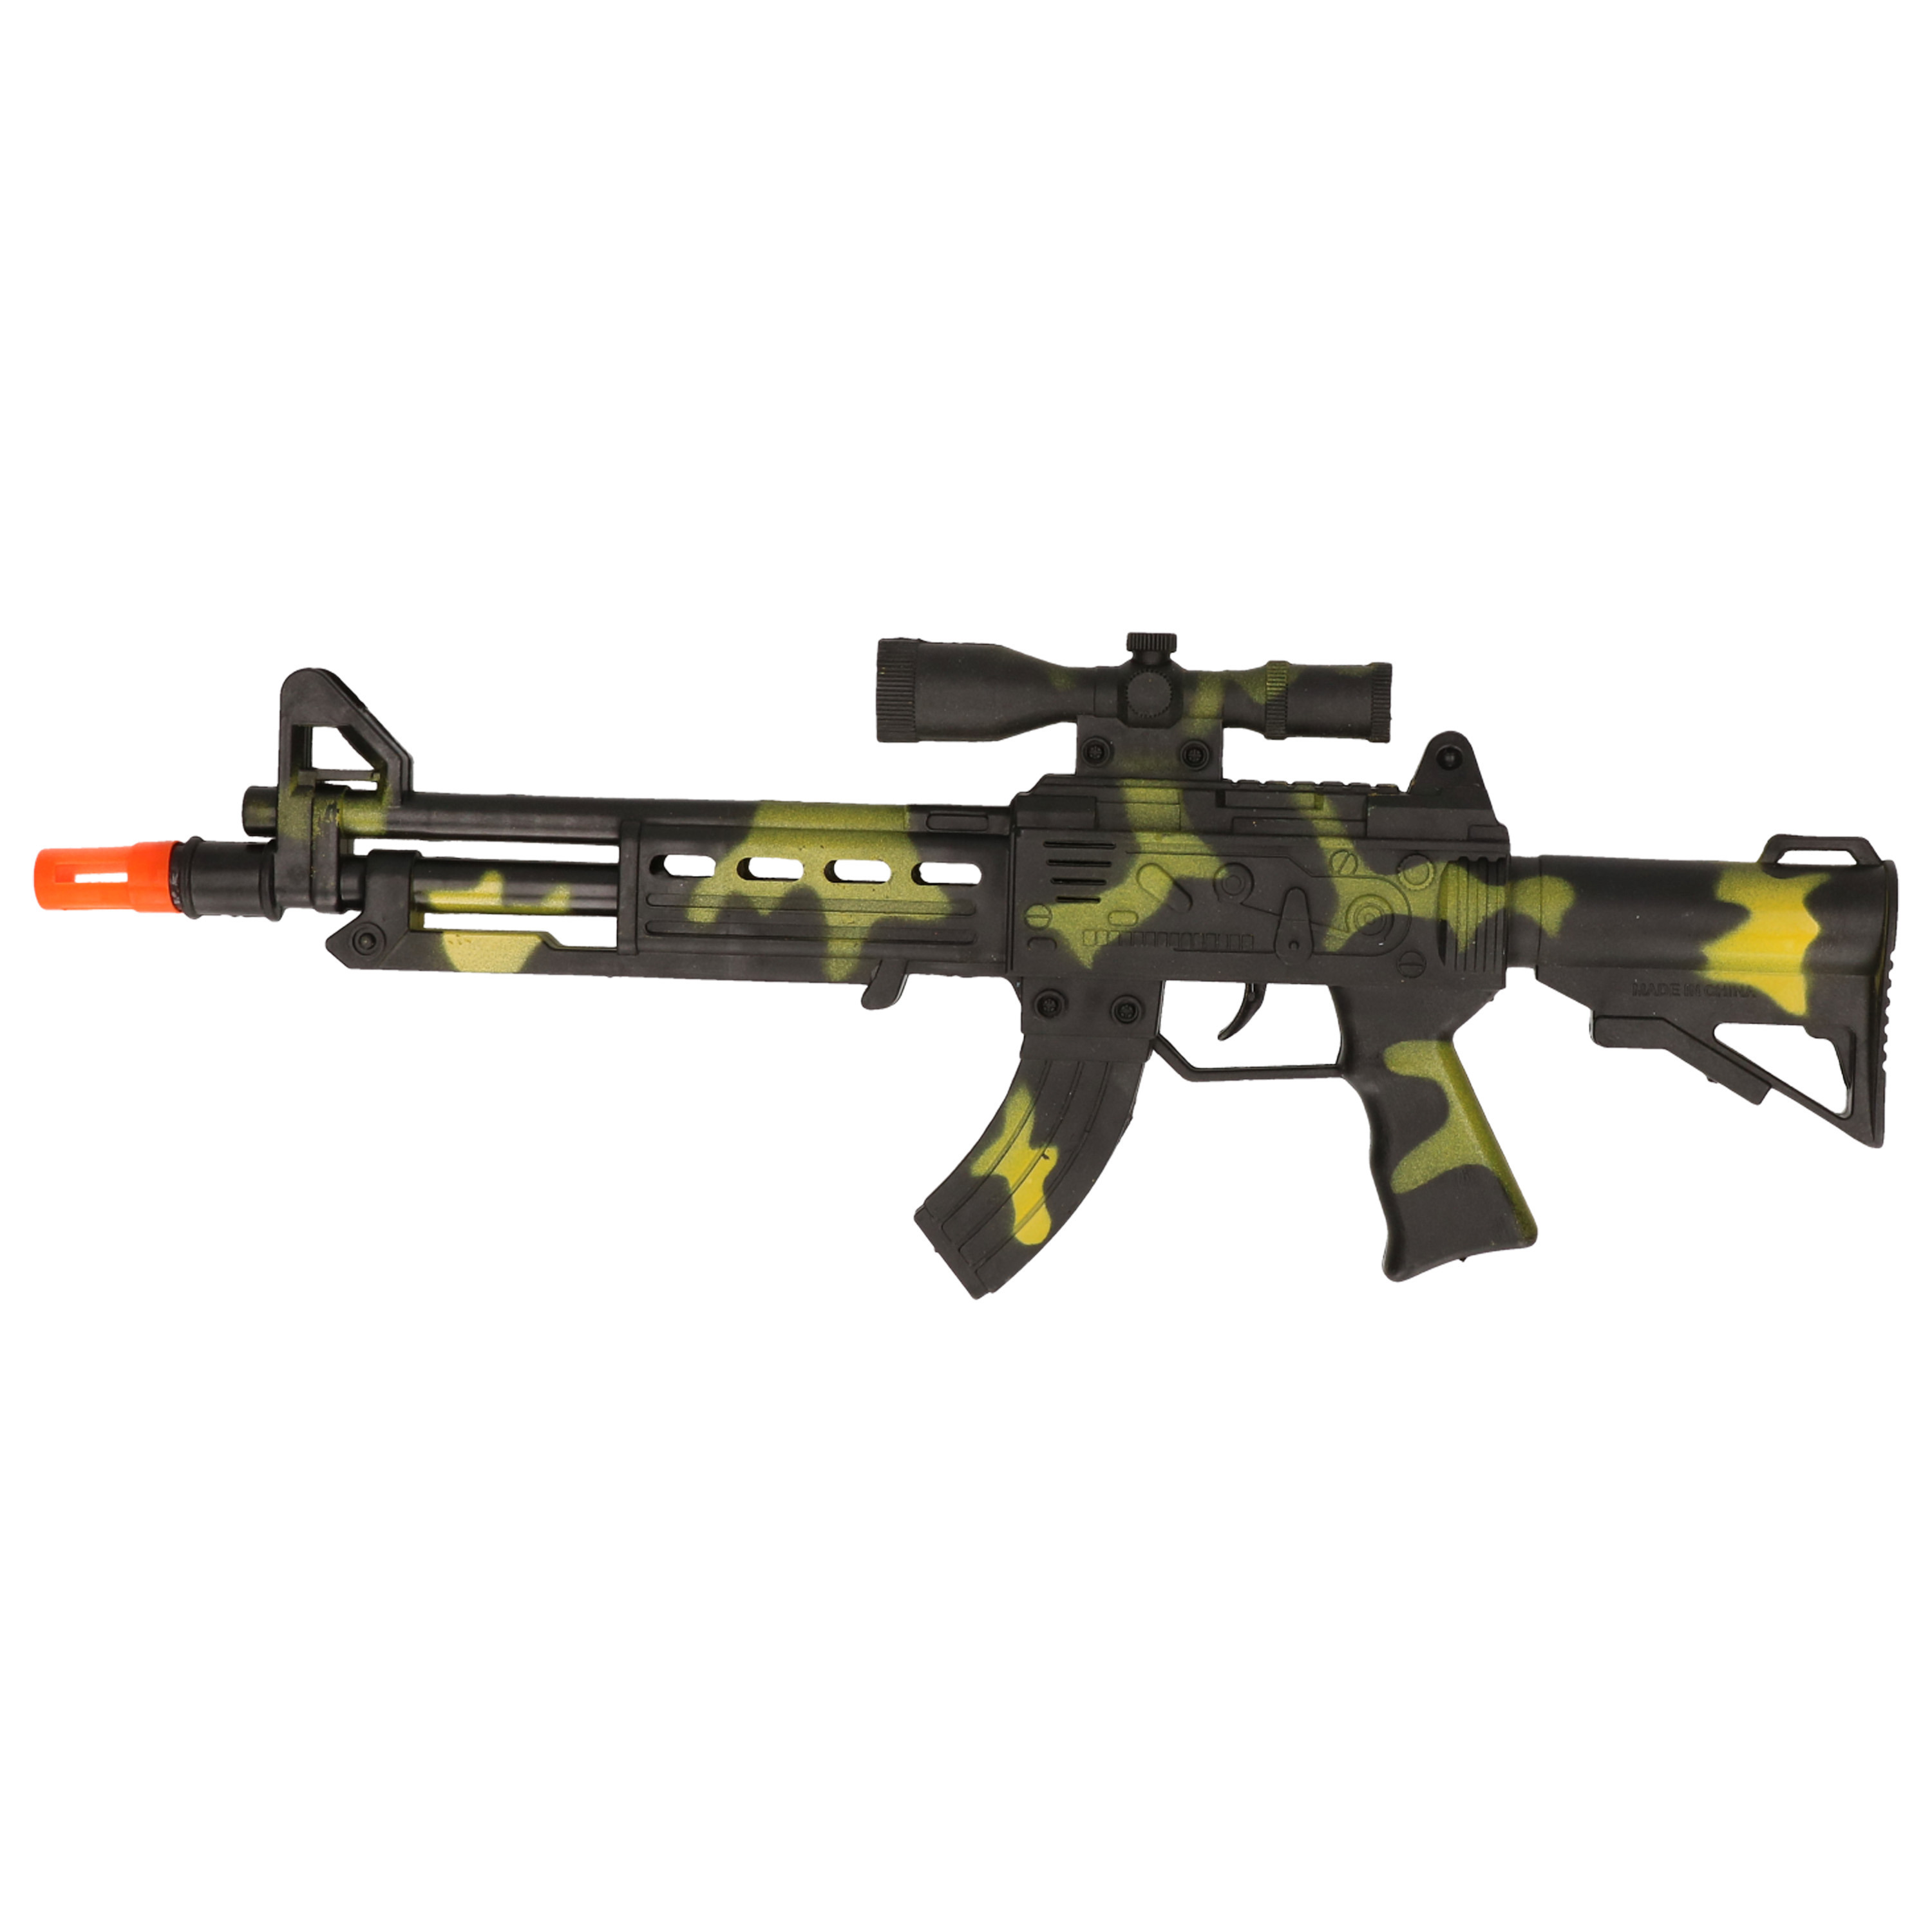 Verkleed speelgoed Politie-soldaten geweer machinegeweer zwart-geel plastic 38 cm